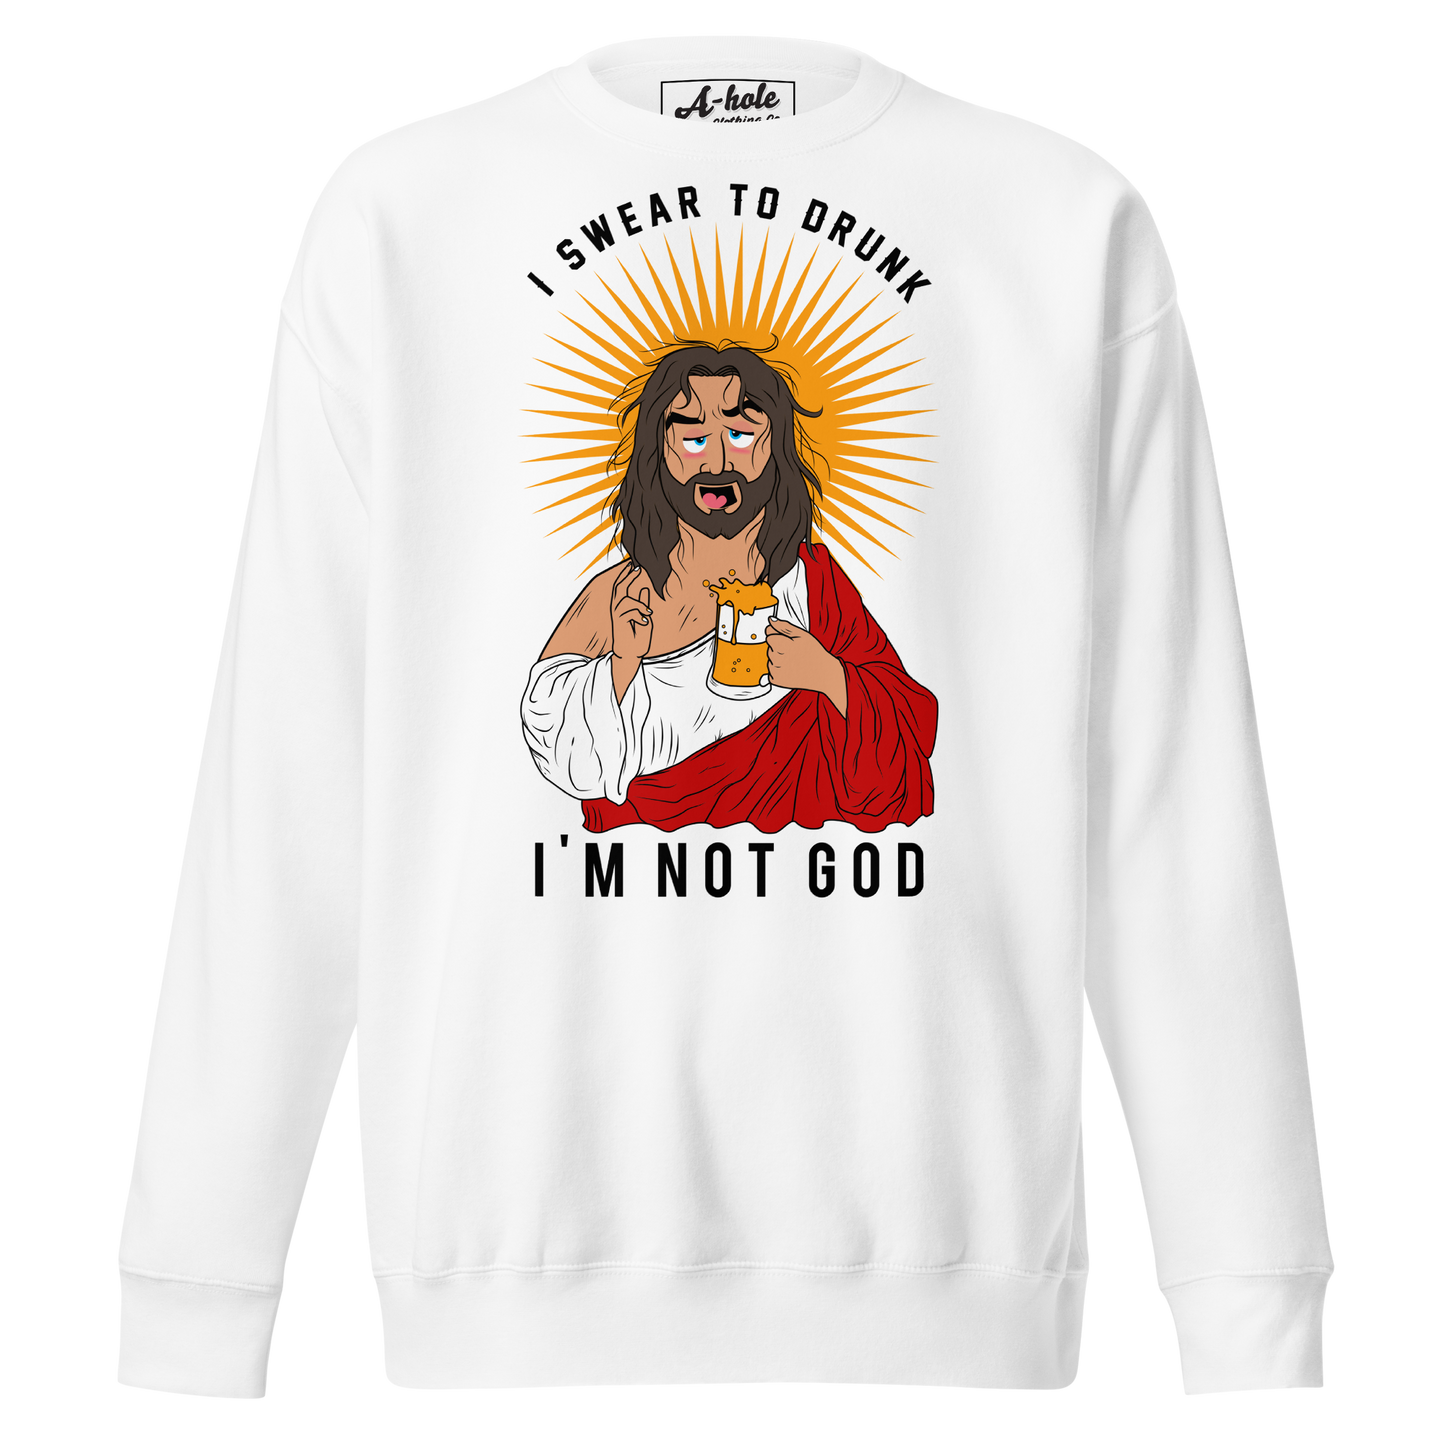 A-Hole "Drunk Jesus" Unisex Premium Sweatshirt